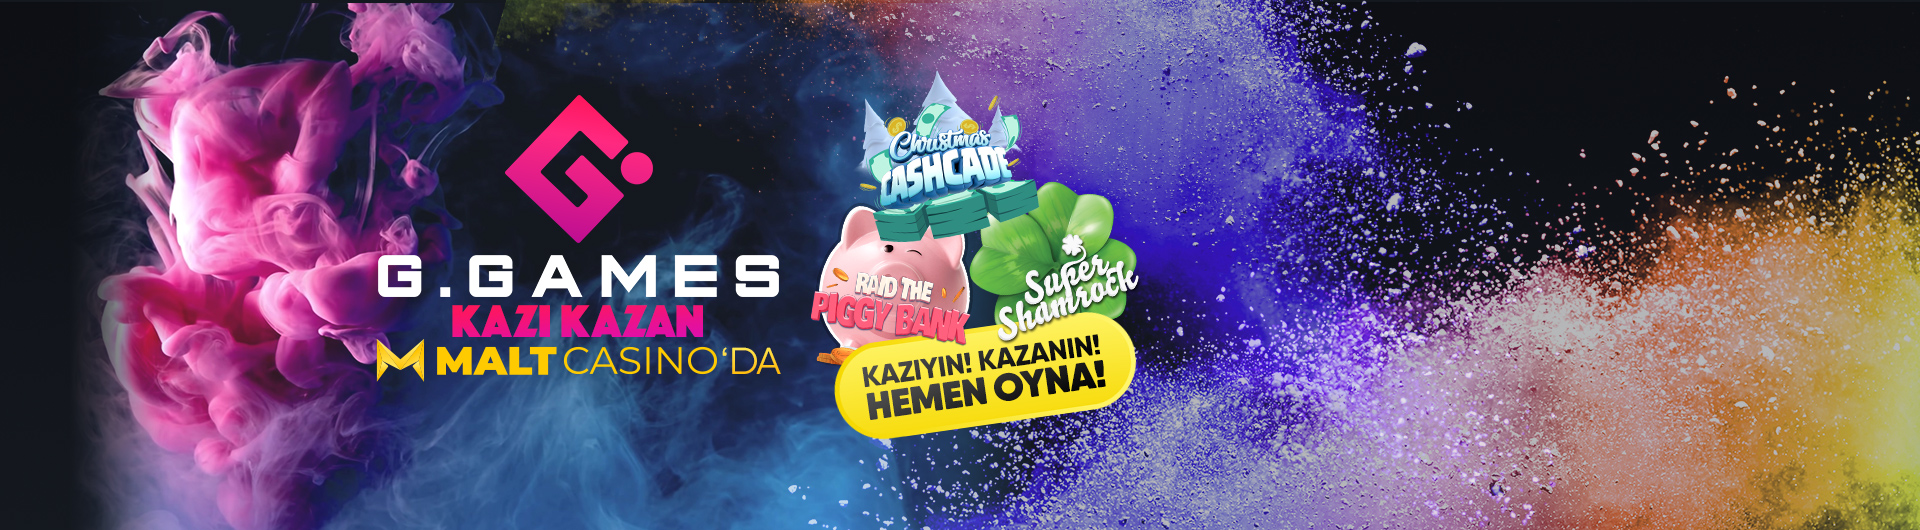 G.Games Kazı Kazan